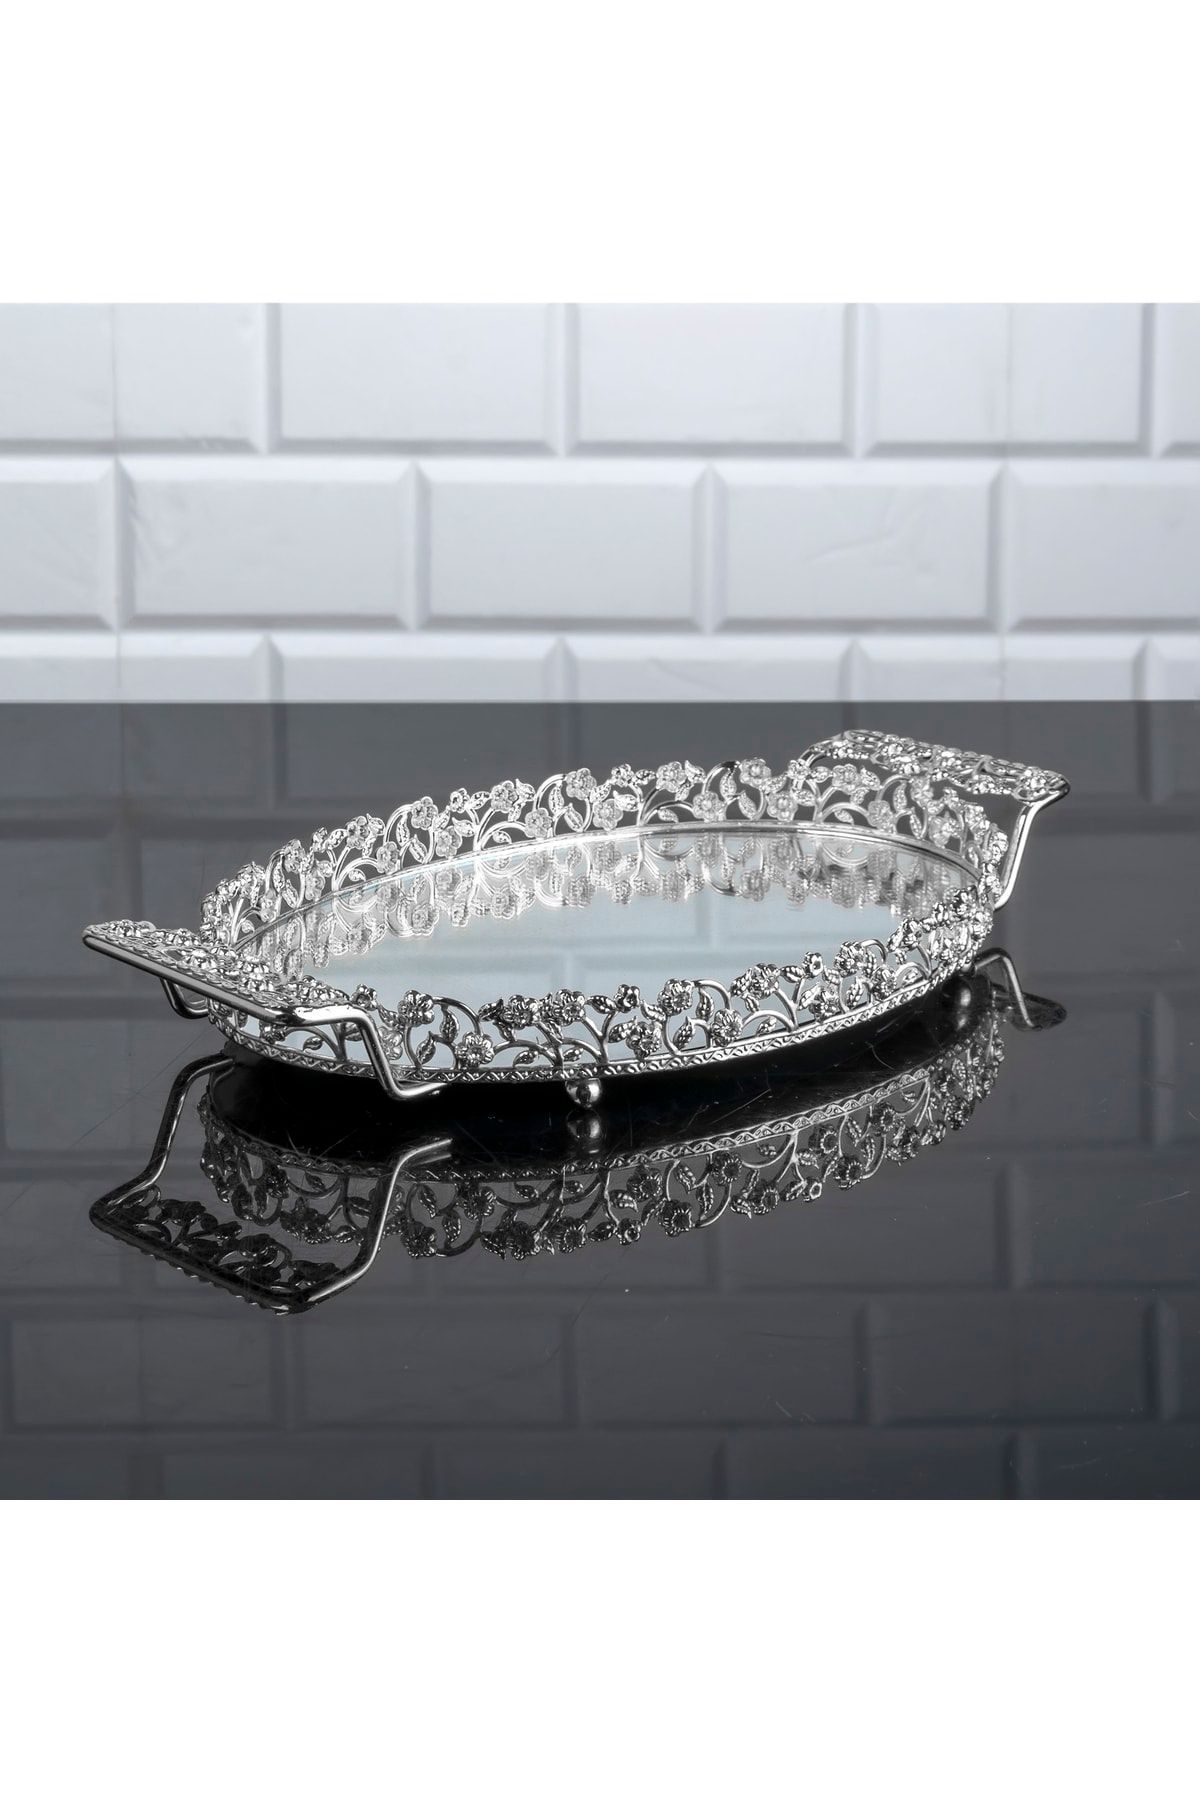 Zeyve Home Elmas Oval Küçük Tepsi Aynalı Metal Kulplu Kahve Sunumluk Çikolata Tepsisi Gümüş